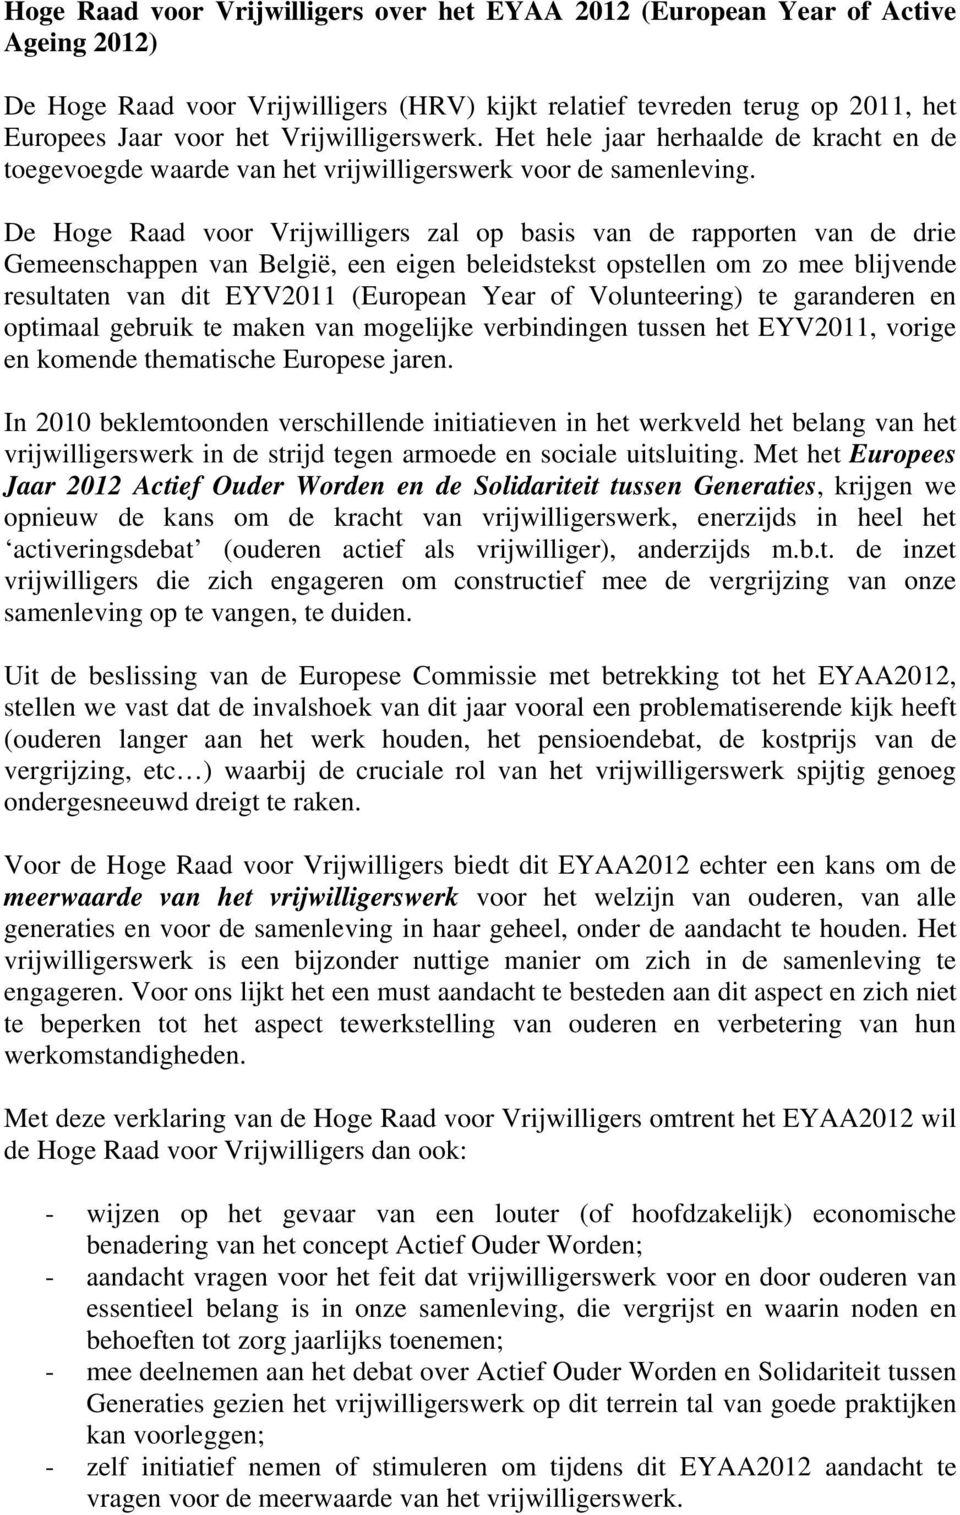 De Hoge Raad voor Vrijwilligers zal op basis van de rapporten van de drie Gemeenschappen van België, een eigen beleidstekst opstellen om zo mee blijvende resultaten van dit EYV2011 (European Year of